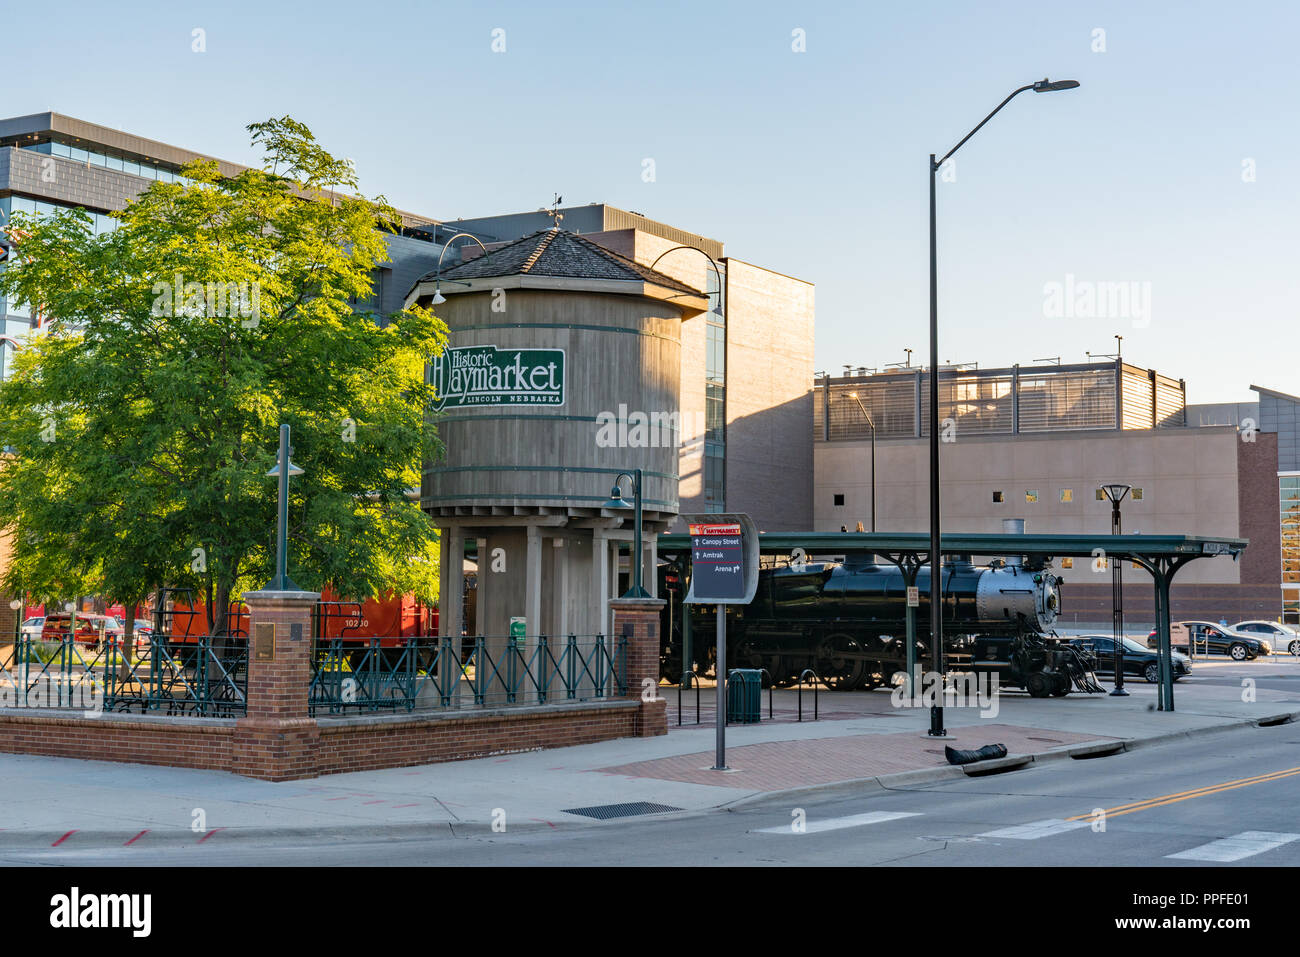 LINCOLN, NE - Julio 10, 2018: la locomotora del ferrocarril y de la torre de agua en el histórico distrito de Haymarket de Lincoln, Nebraska Foto de stock